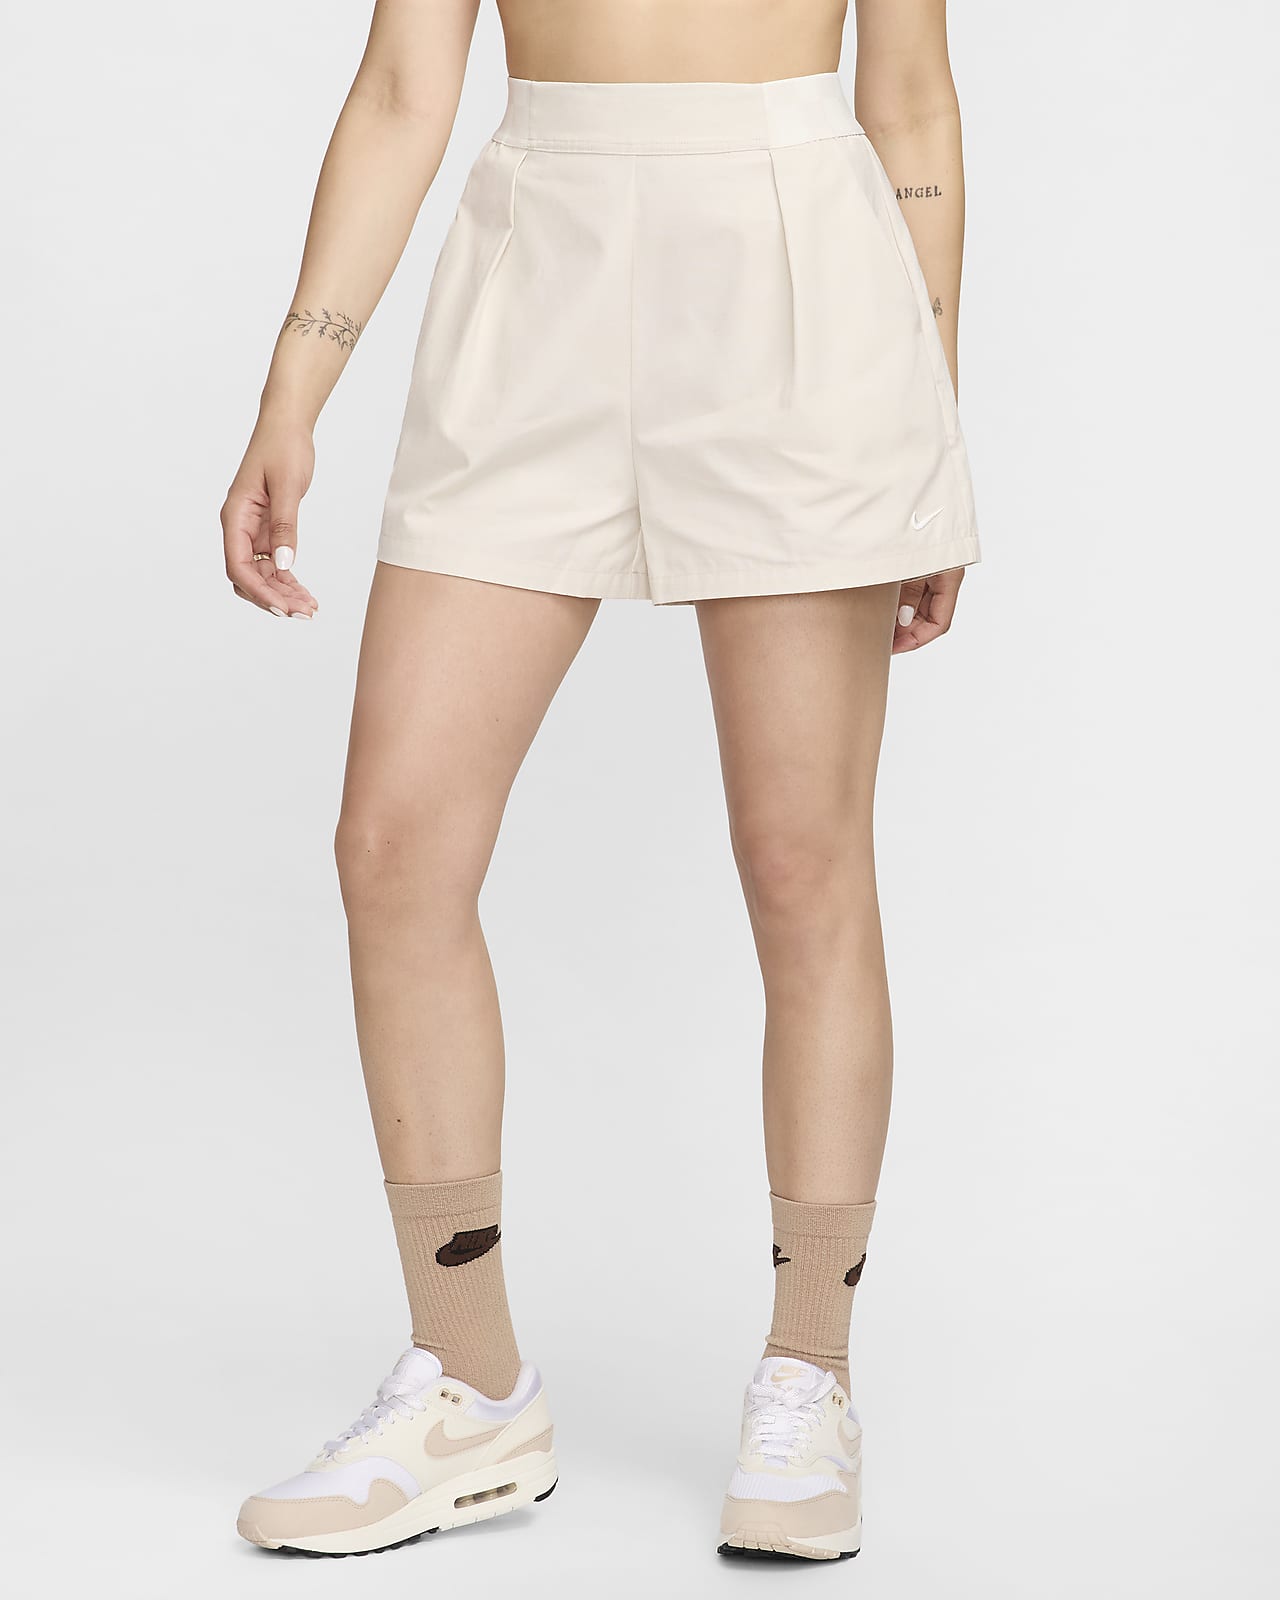 Nike Sportswear Collection Trouser-Shorts für Damen mit hohem Taillenbund (ca. 7,5 cm)